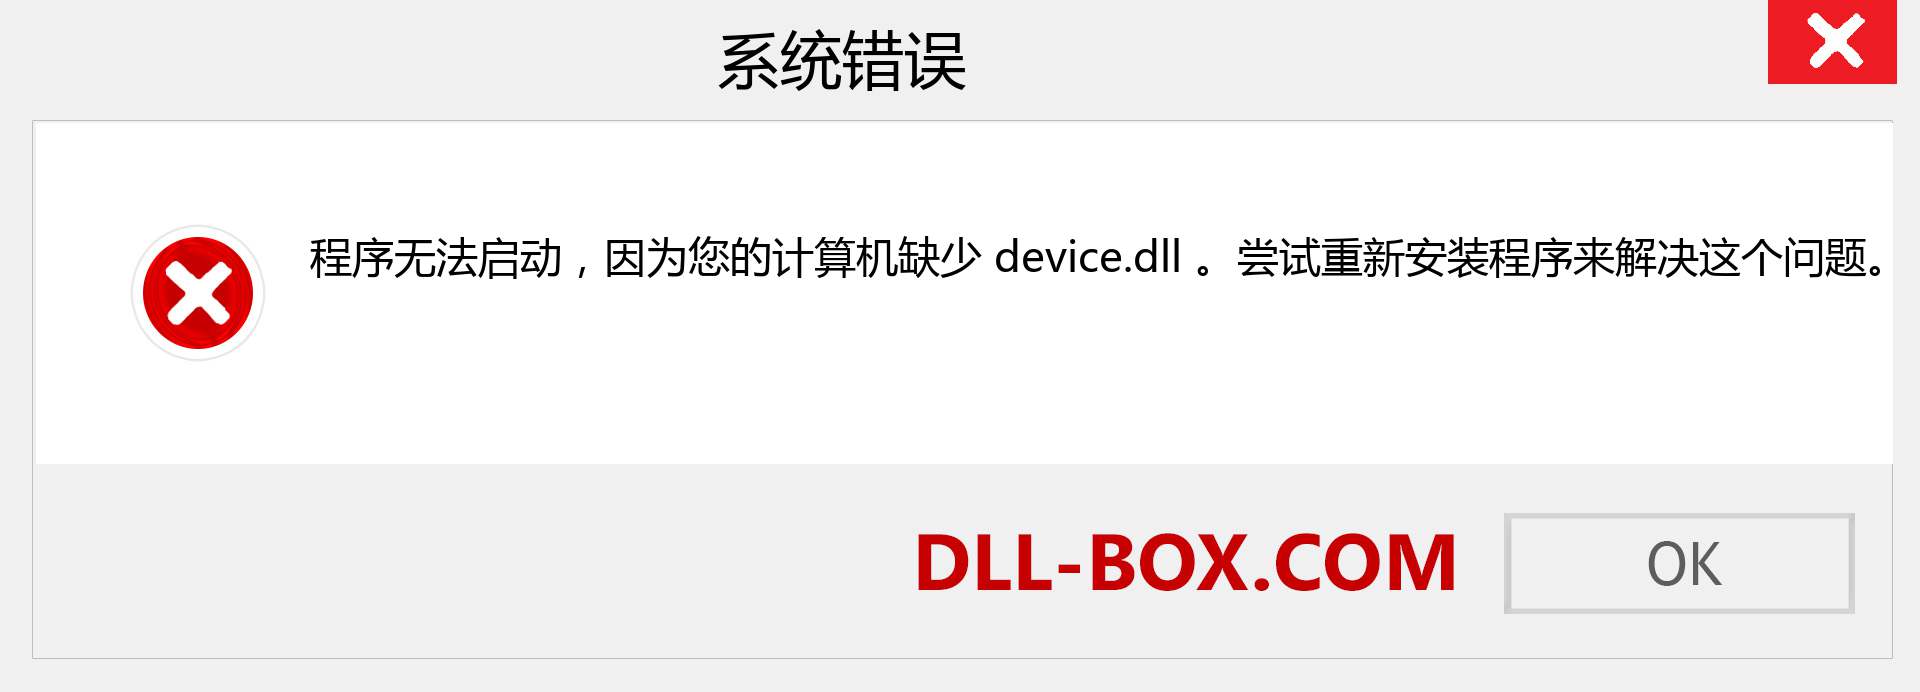 device.dll 文件丢失？。 适用于 Windows 7、8、10 的下载 - 修复 Windows、照片、图像上的 device dll 丢失错误